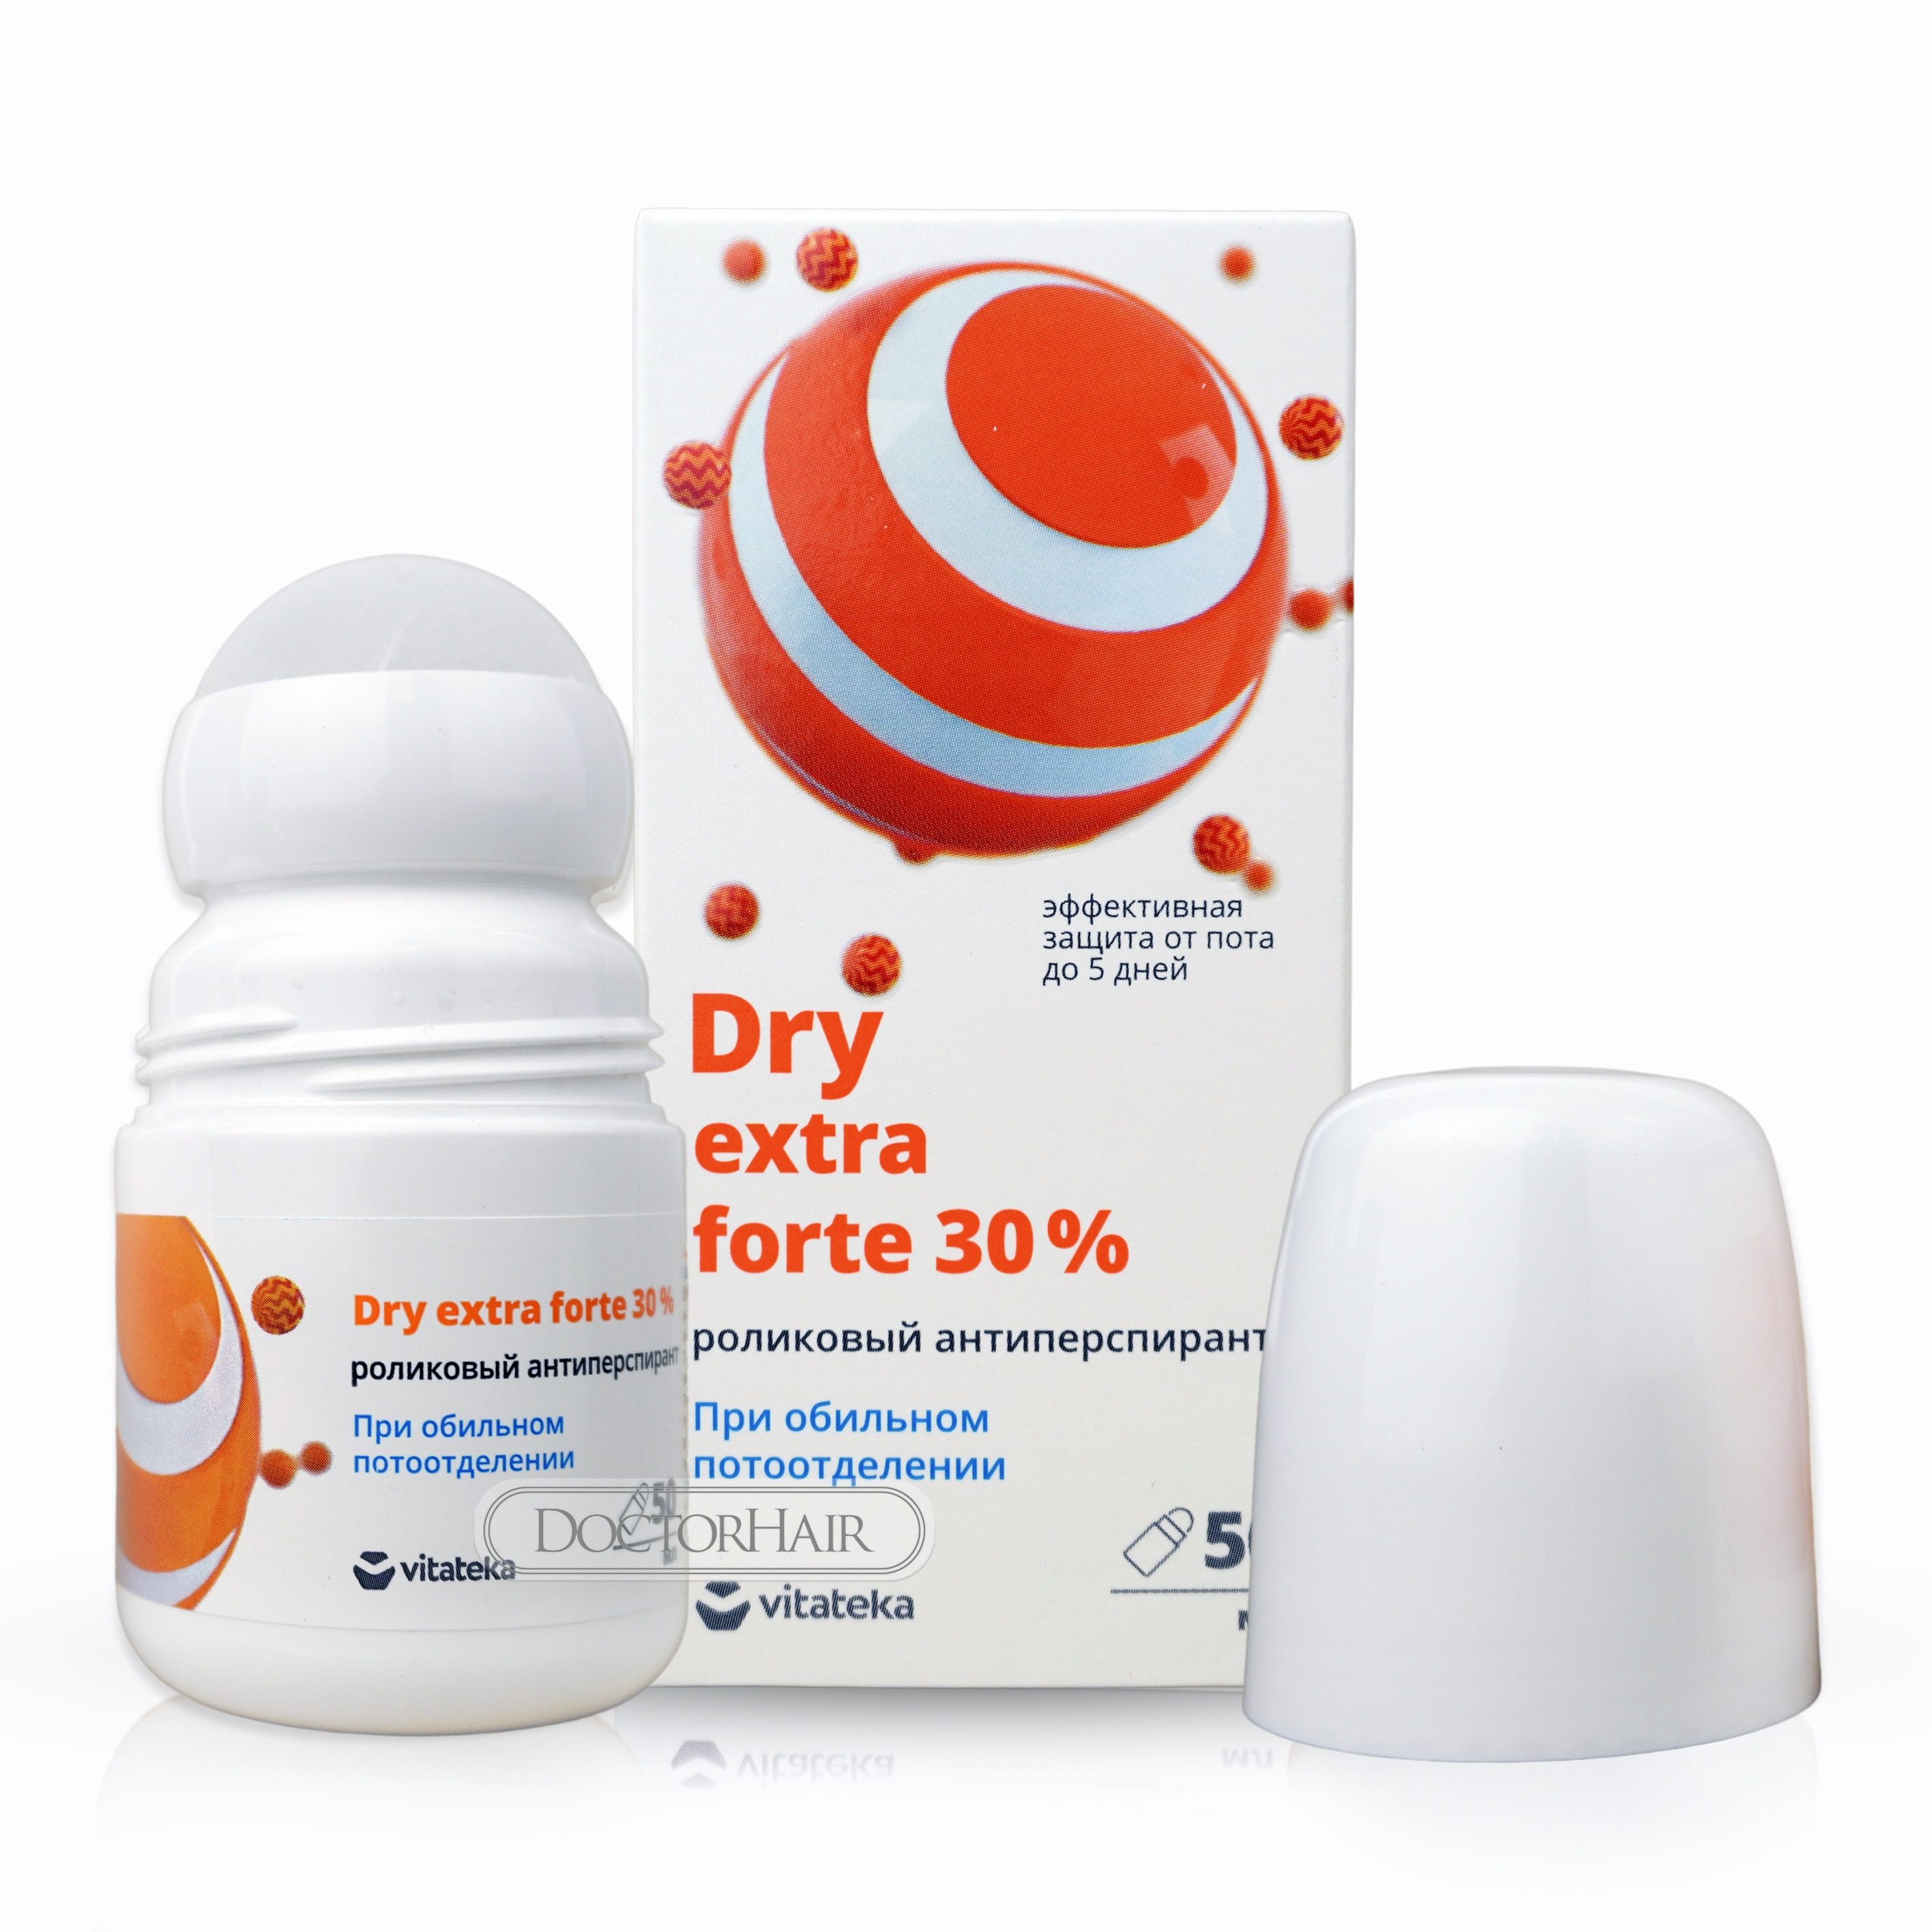 Где Можно Купить Dry Forte 20